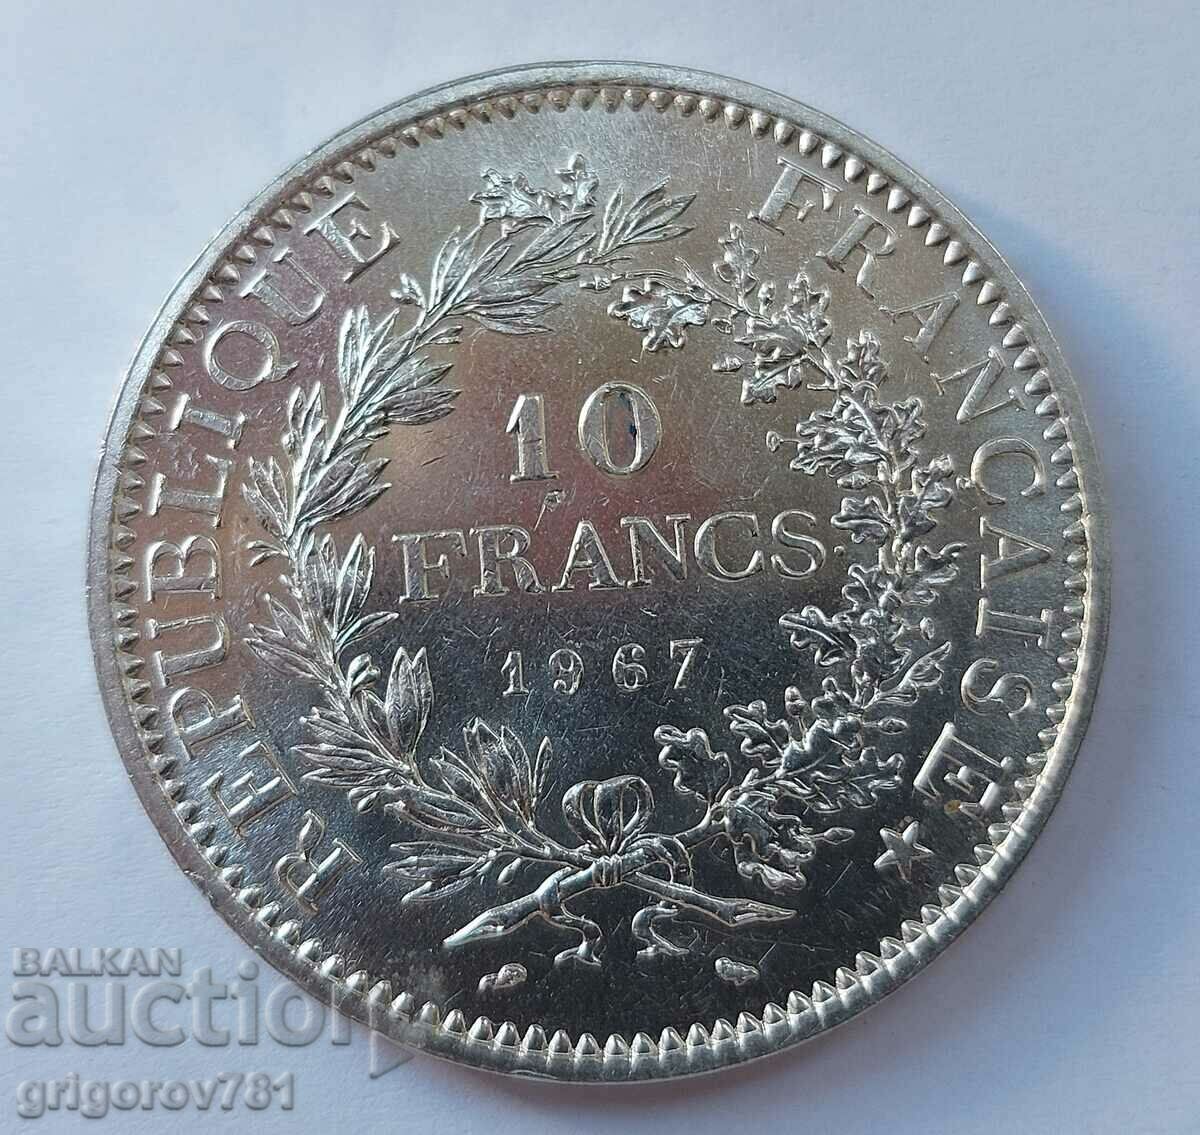 10 Franci Argint Franta 1967 - Moneda de argint #20